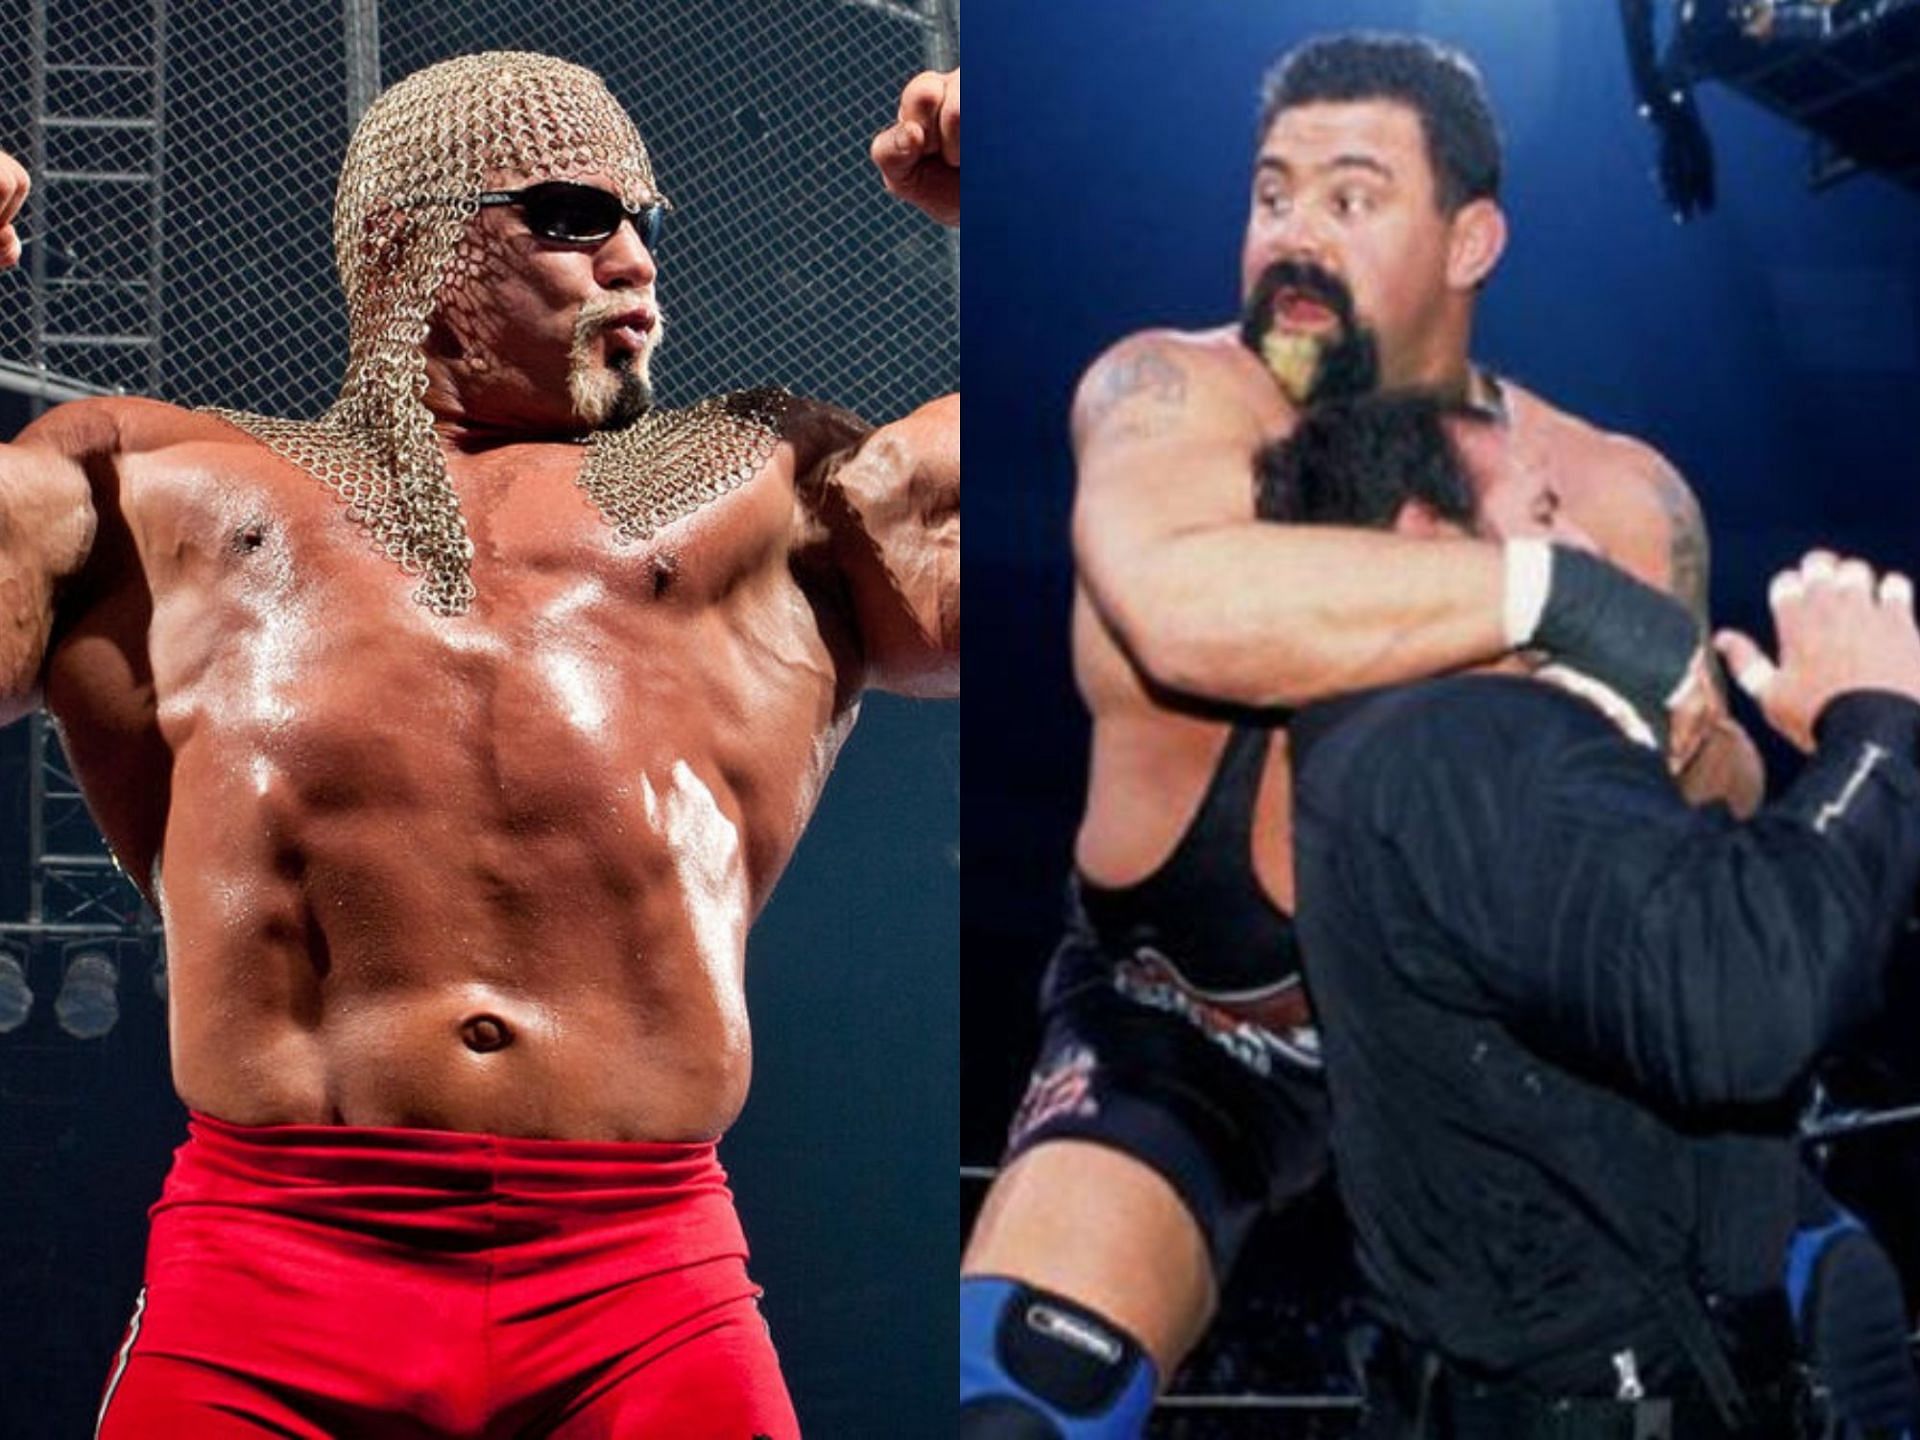 Who was crazier - Scott Steiner or Rick Steiner?